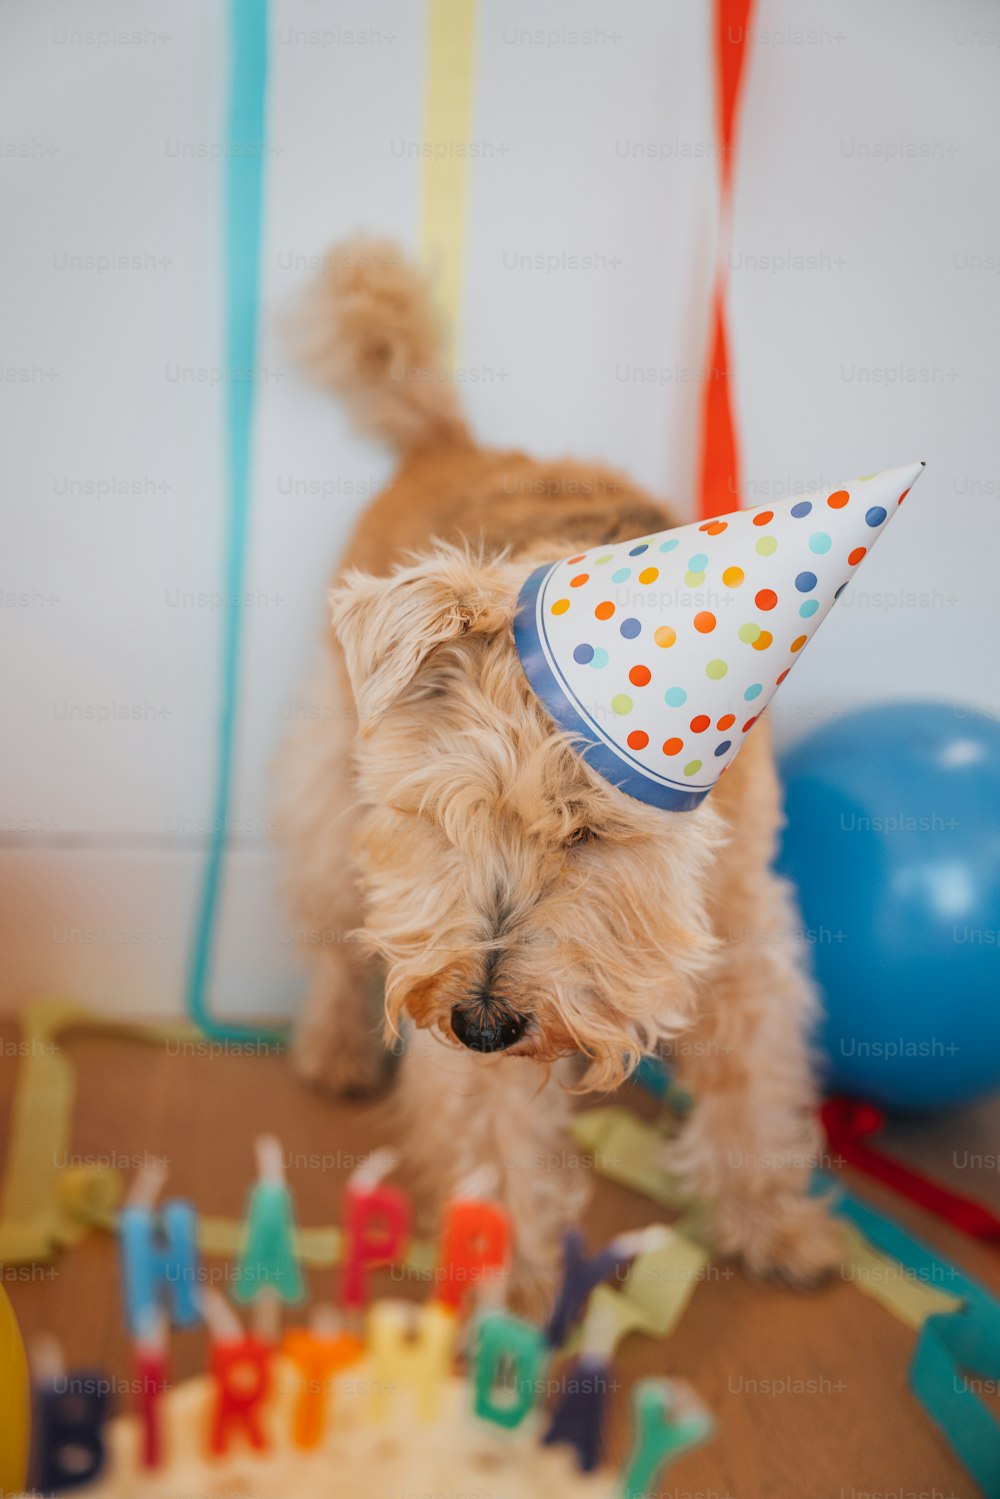 생일 케이크 앞에 서 있는 파티 모�자를 쓴 작은 개